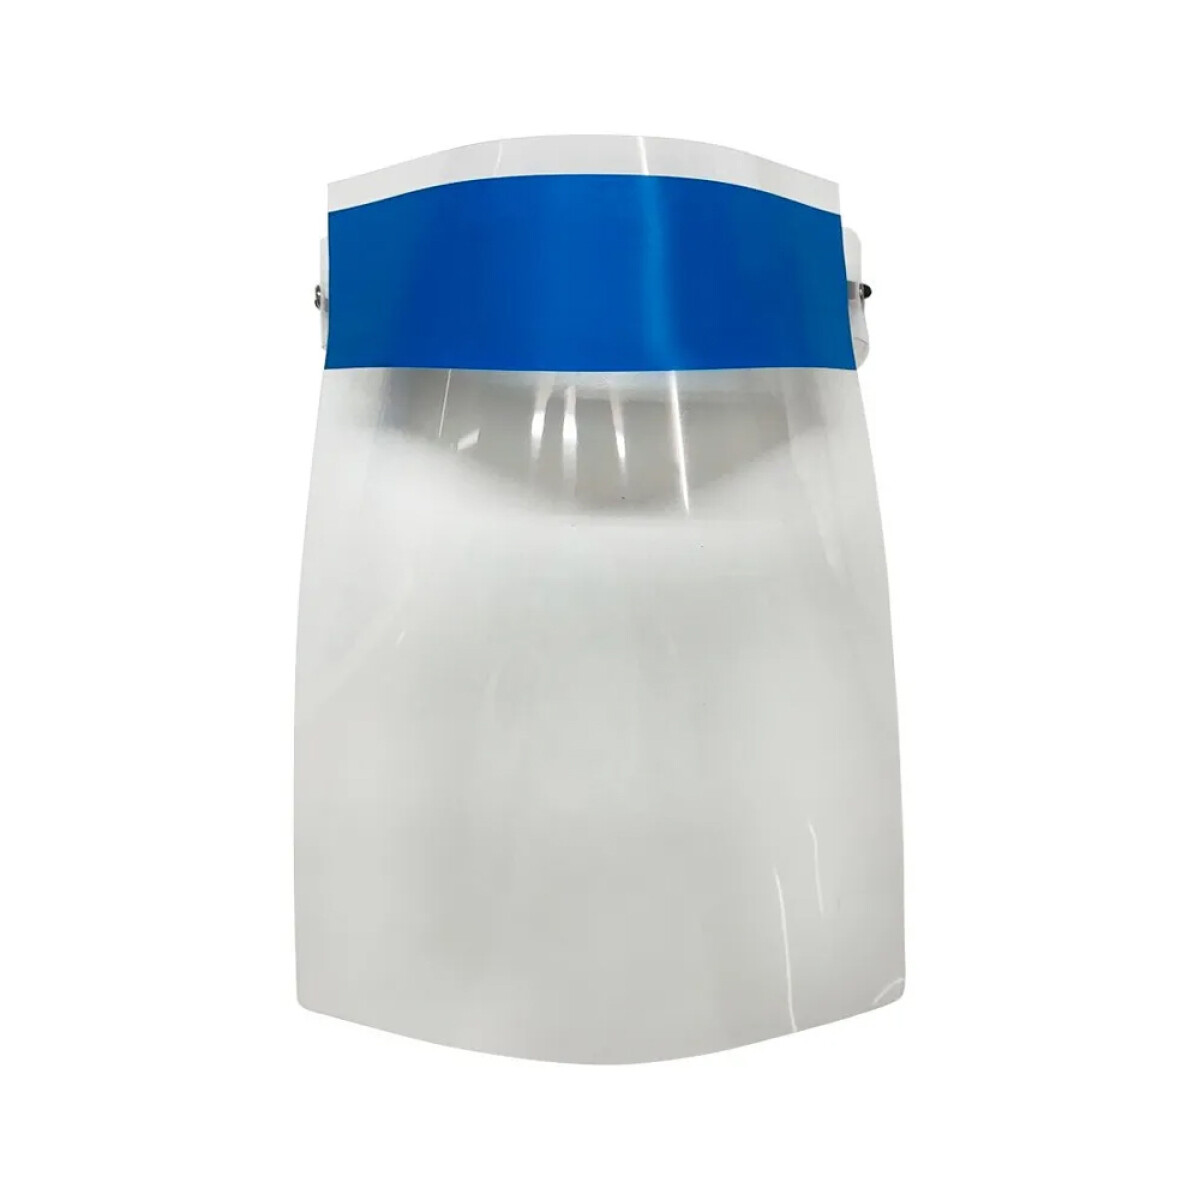 Careta De Protección Facial Transparente Tapa Boca x10 - Azul 